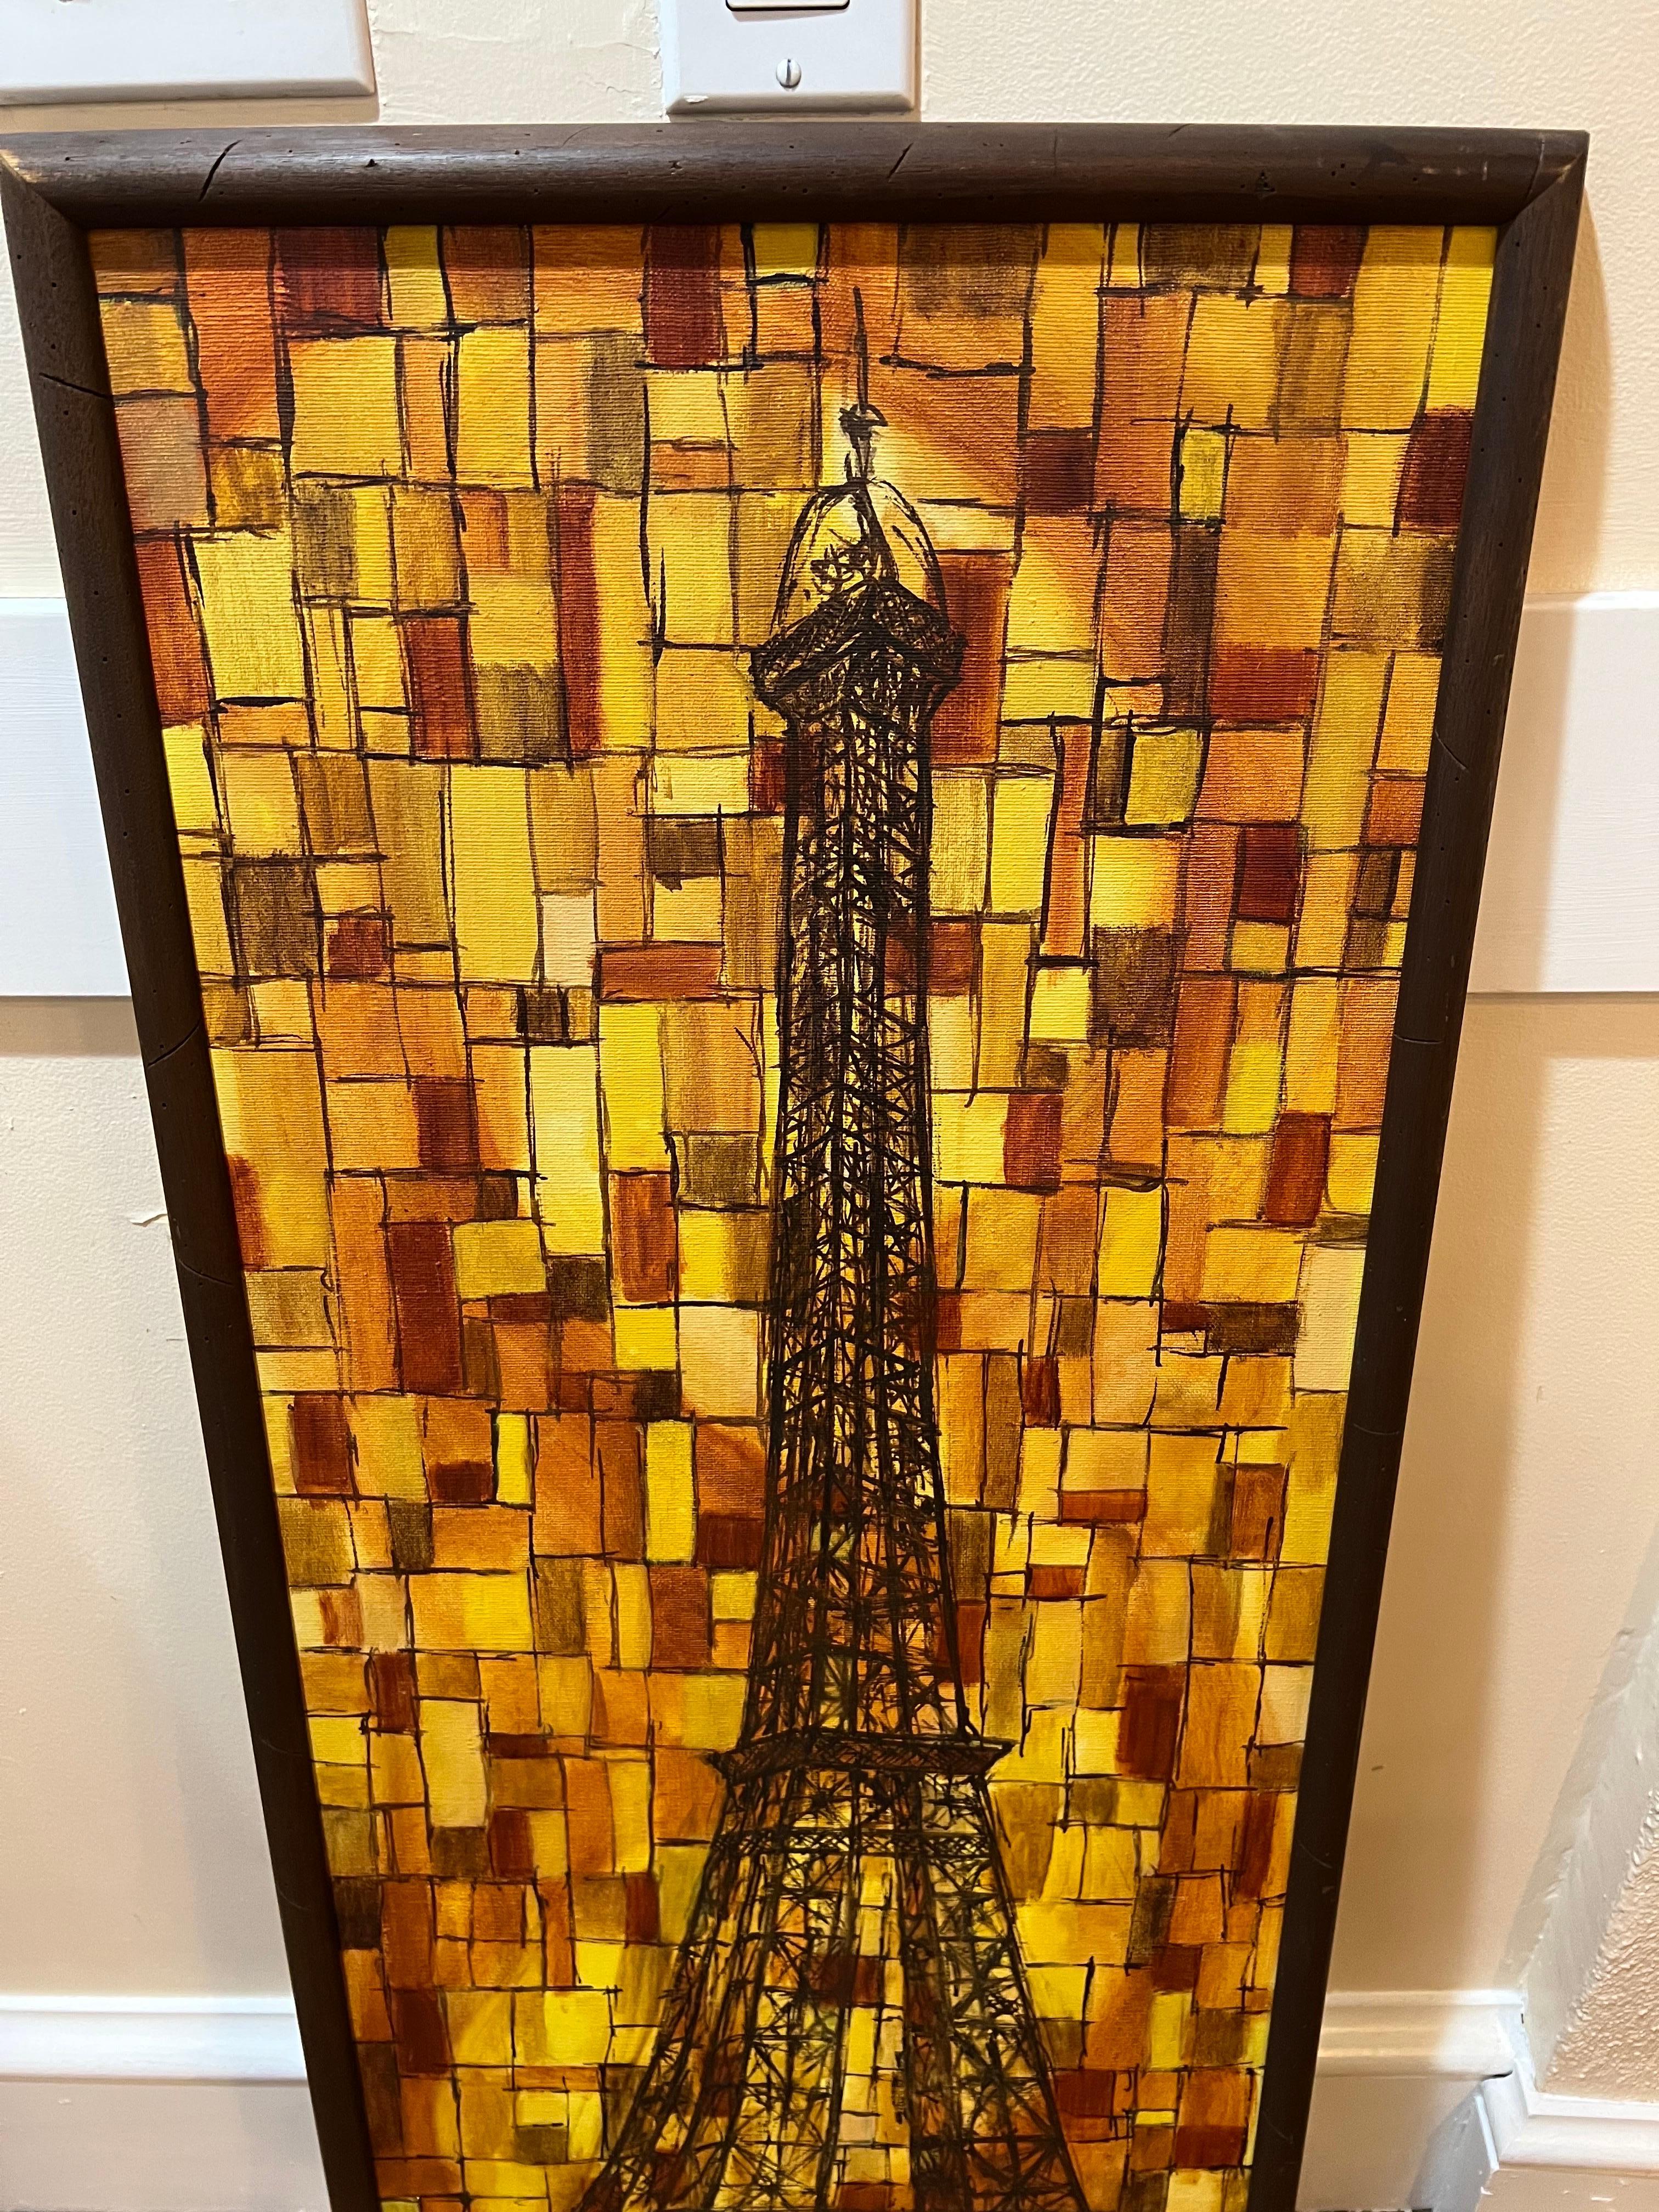 Signiertes Gemälde des Eiffelturms aus der Mitte des Jahrhunderts von Joseph L. Klein III. Fabelhafte Komposition des Eiffelturms in Orange- und Brauntönen. Kubistischer Stil mit karierten Mustern. Bitte bestätigen Sie die Abmessungen vor dem Kauf.